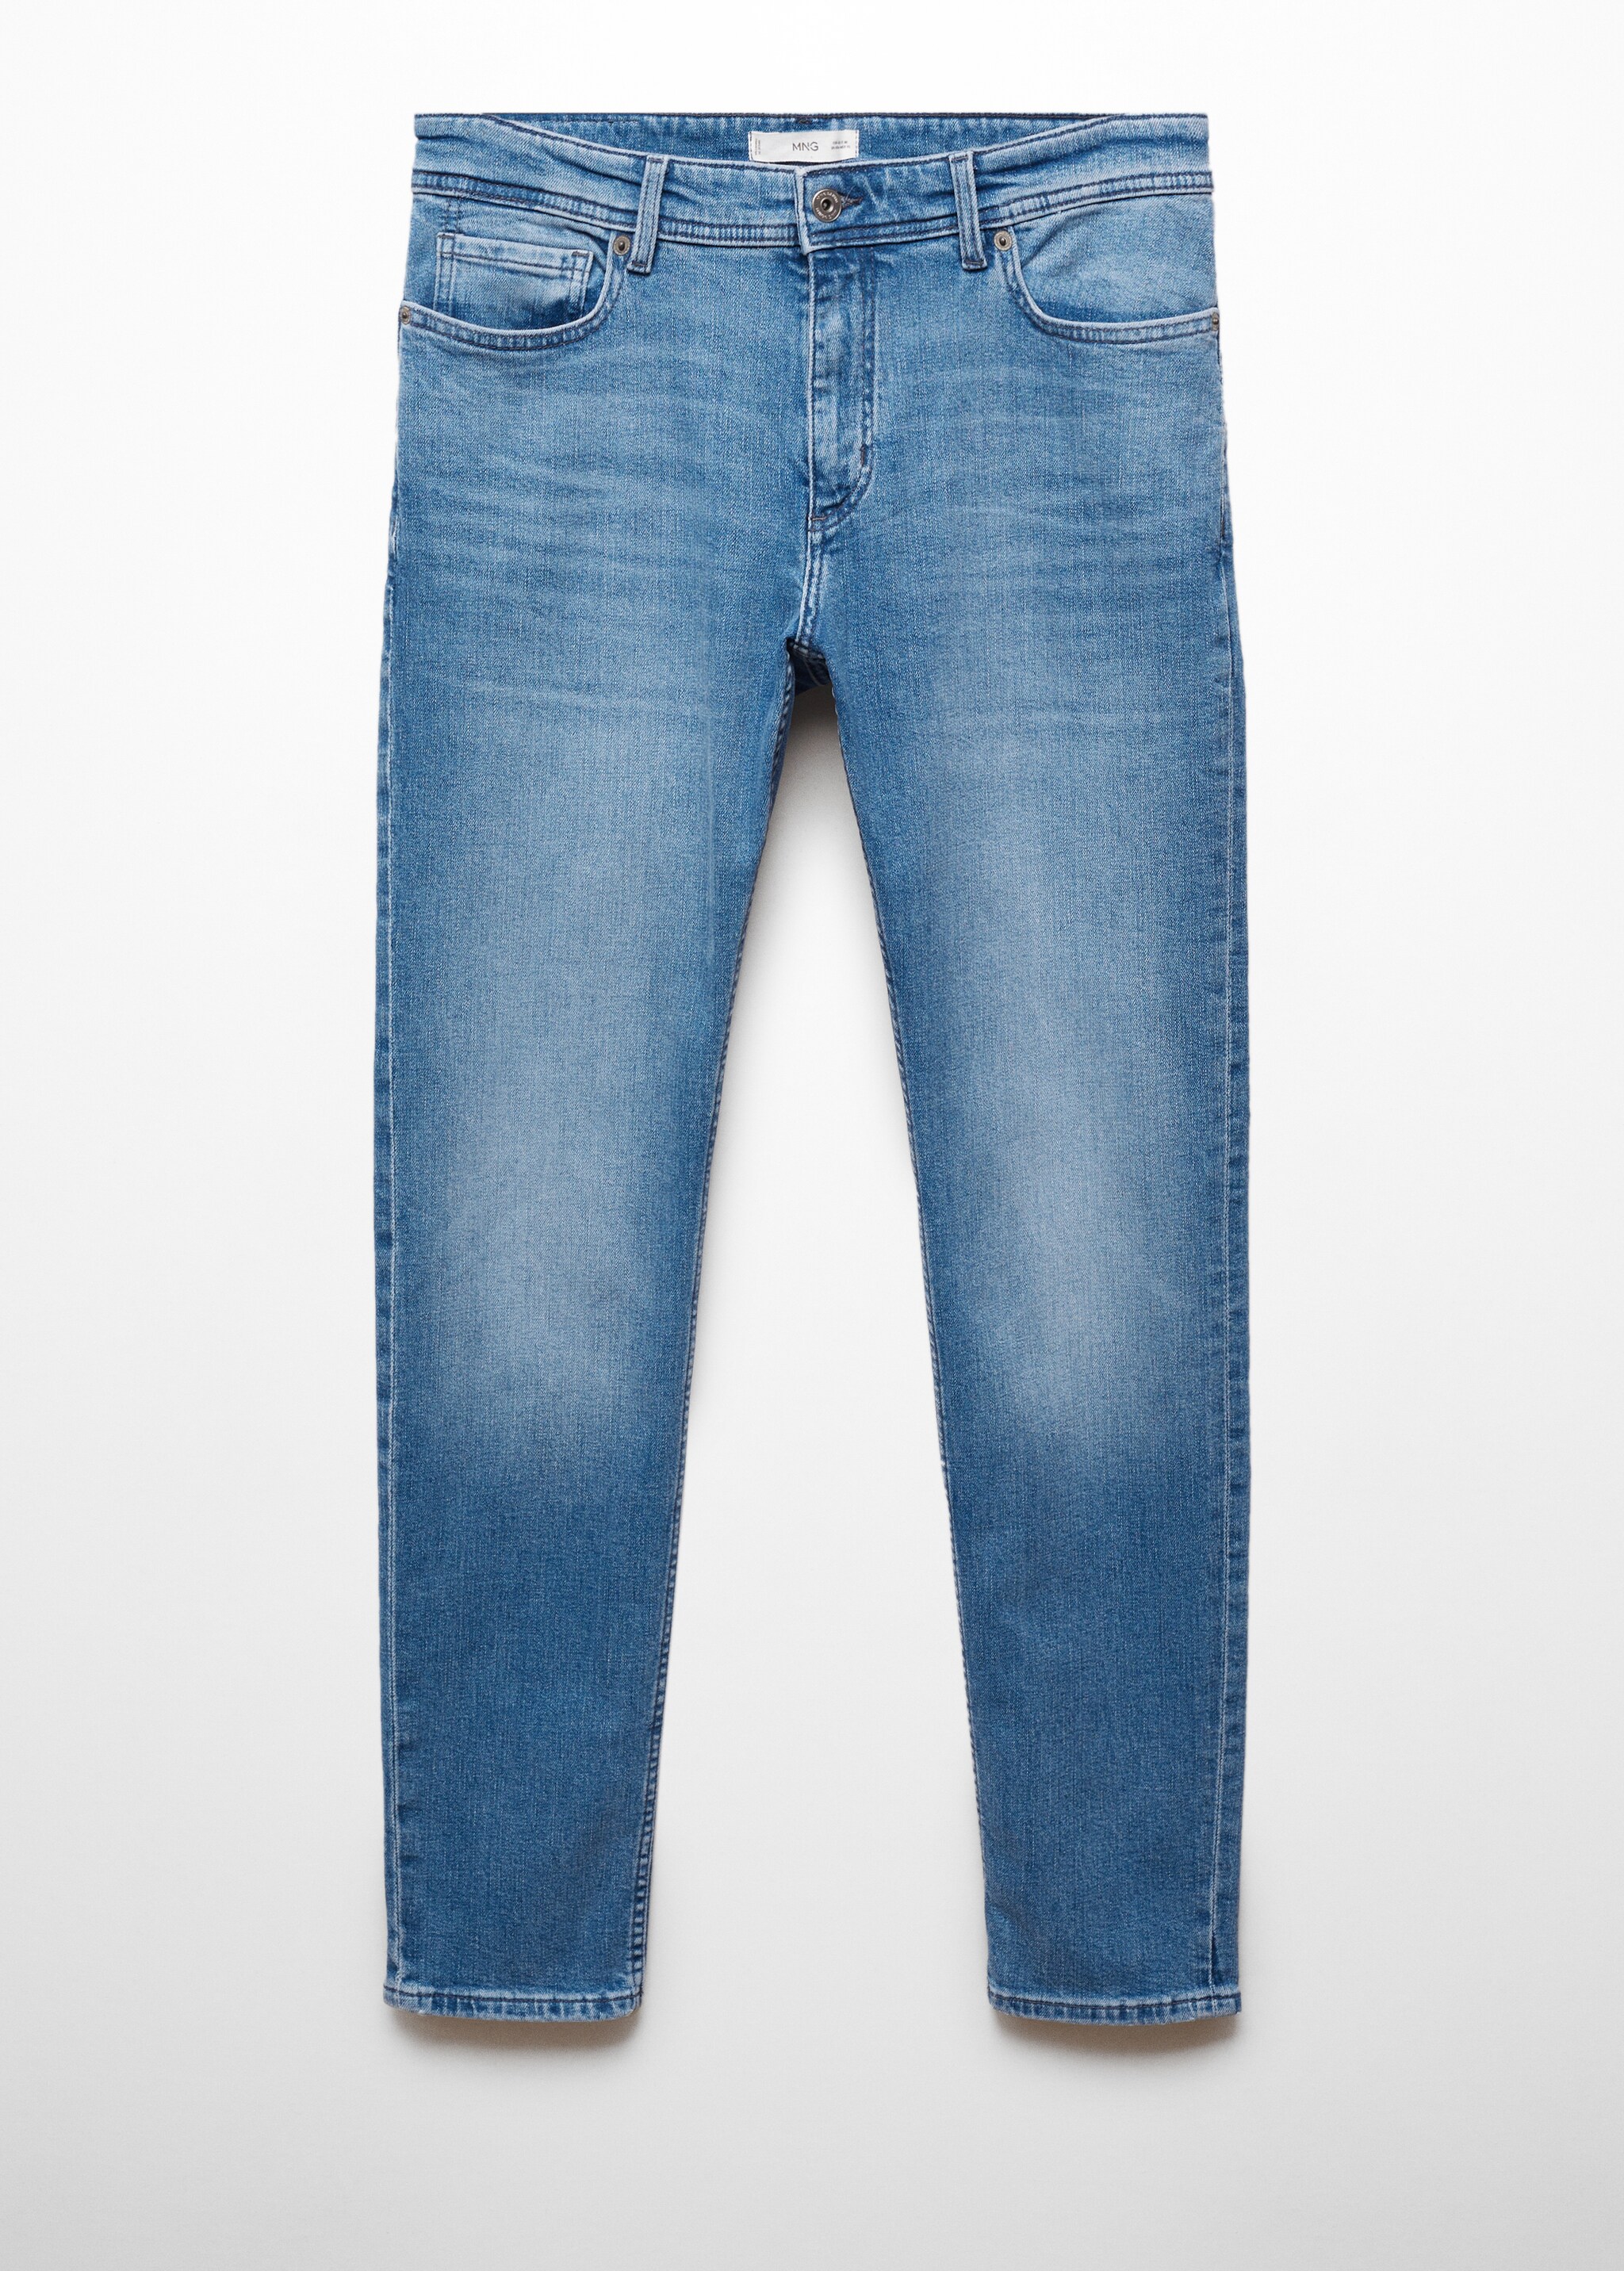 Jeans Jan slim fit  - Articolo senza modello